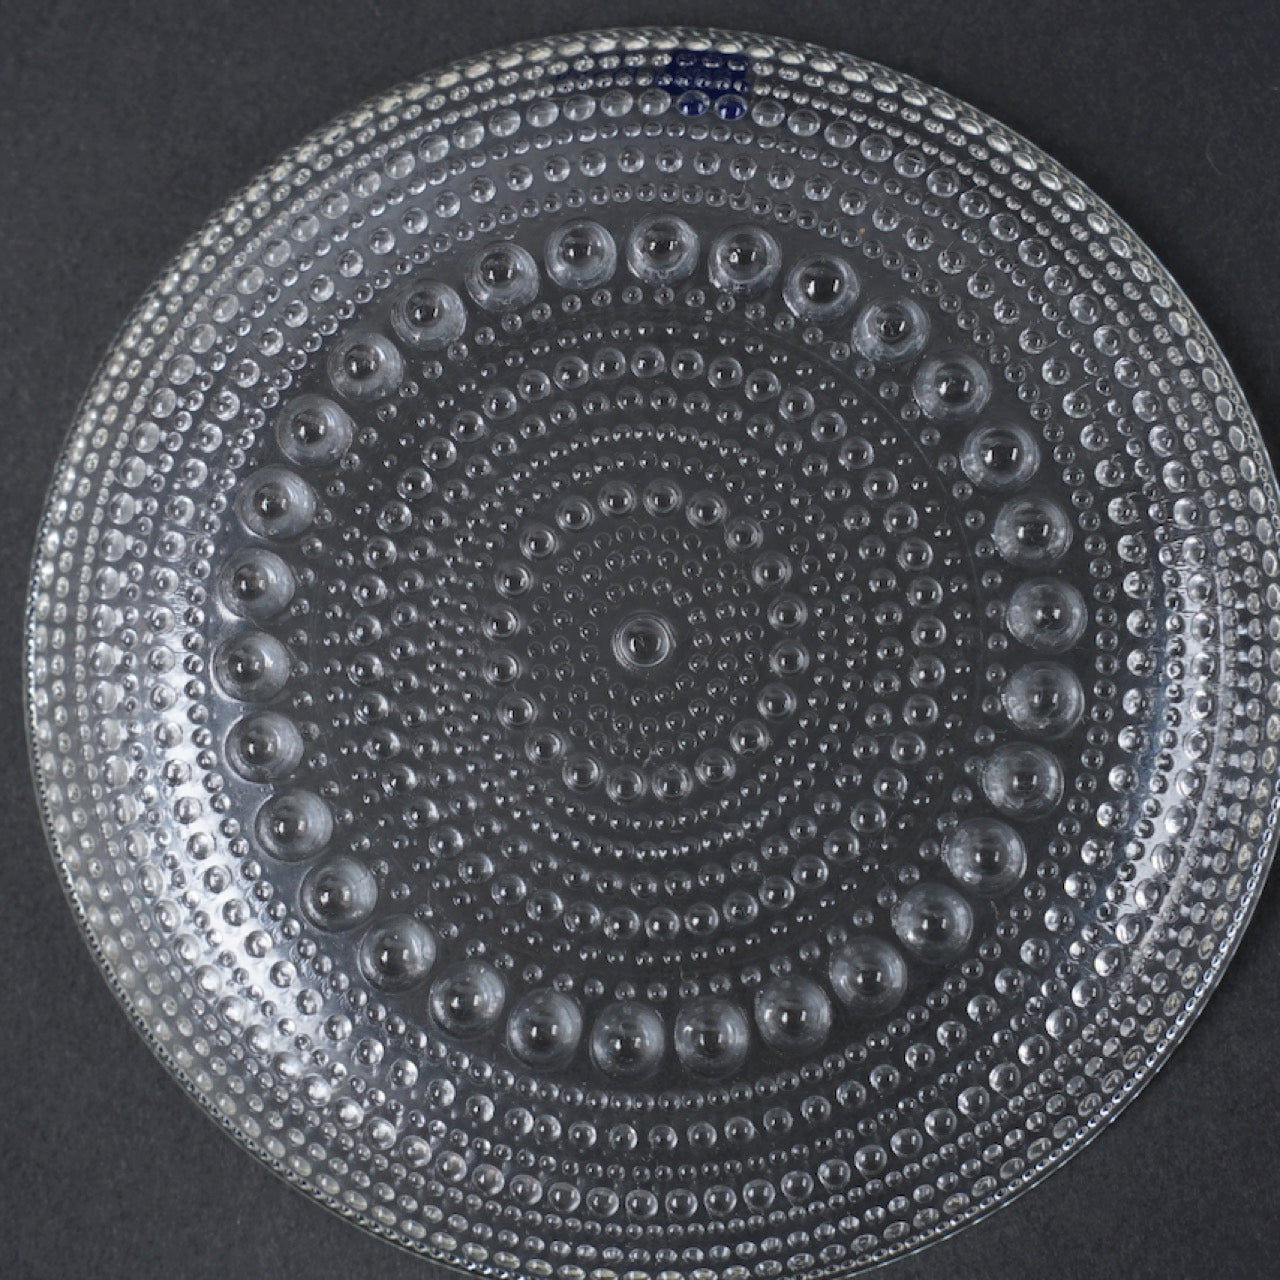 ARABIA ヌータヤルヴィ カステヘルミ 14cmプレート Plates ARABIA   